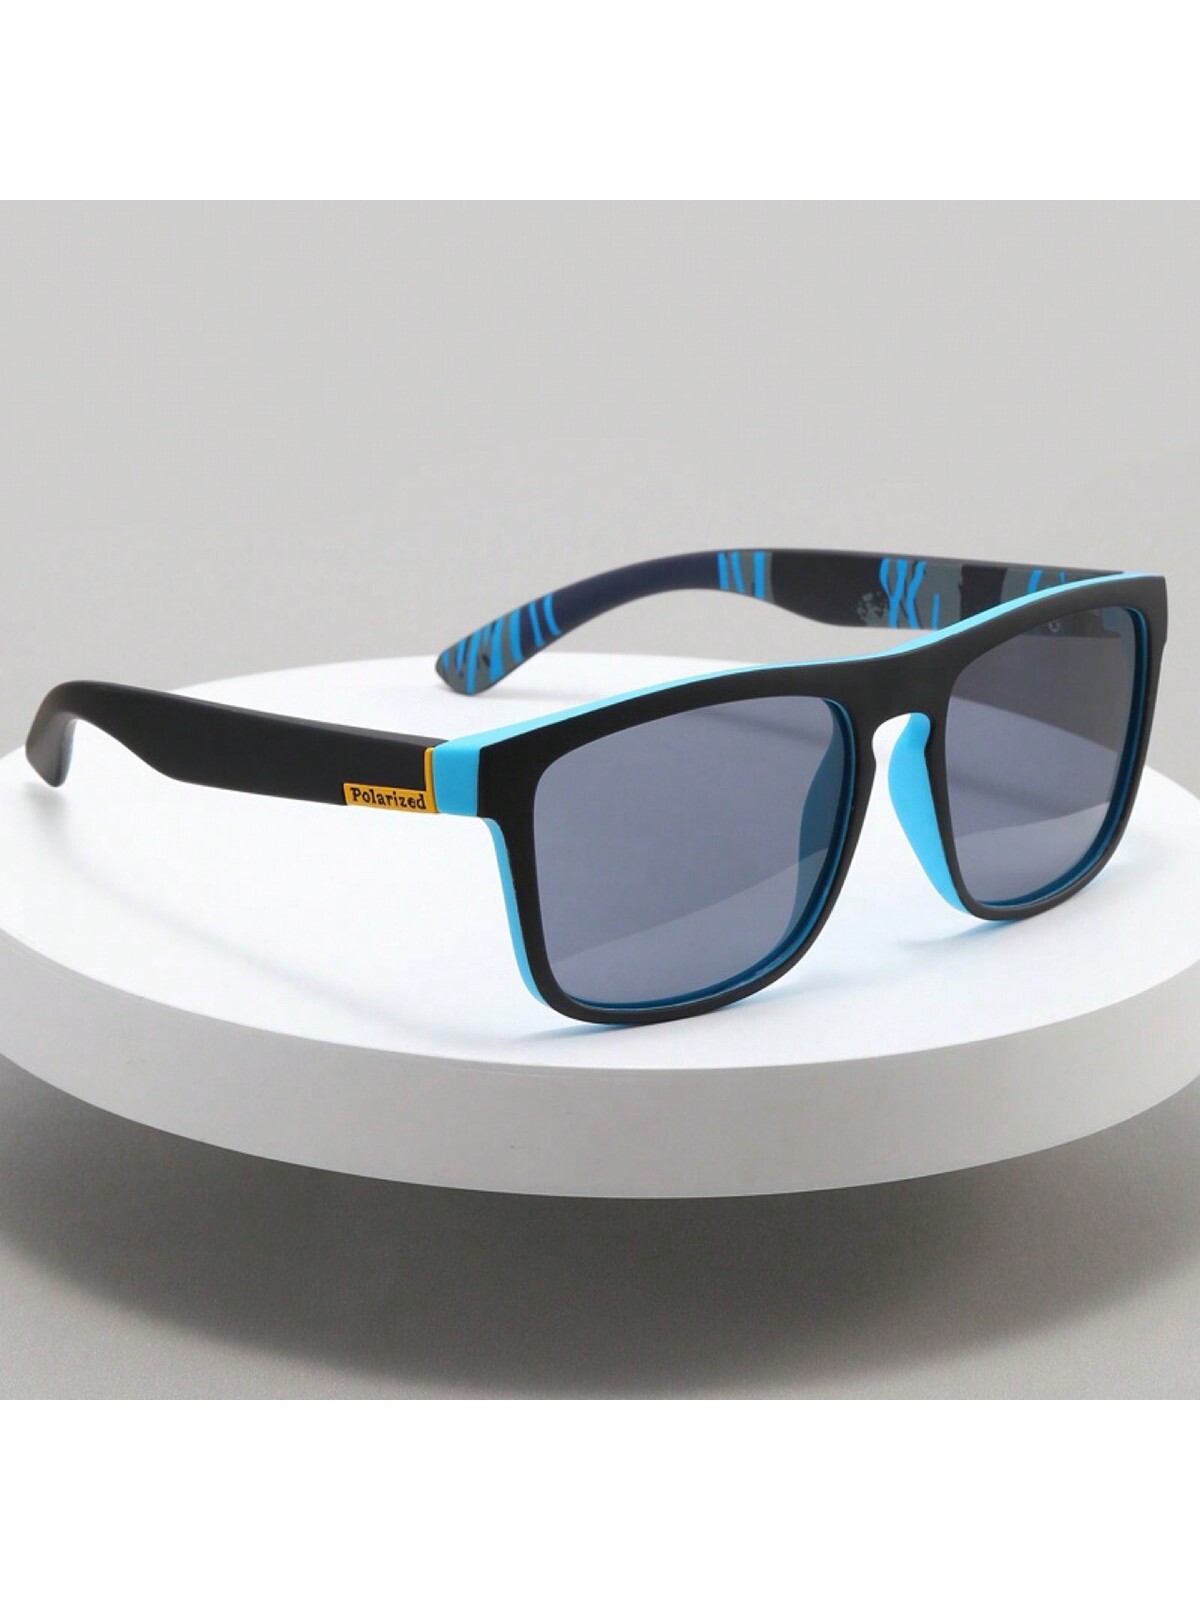 Поляризованные солнцезащитные очки D731 для спорта